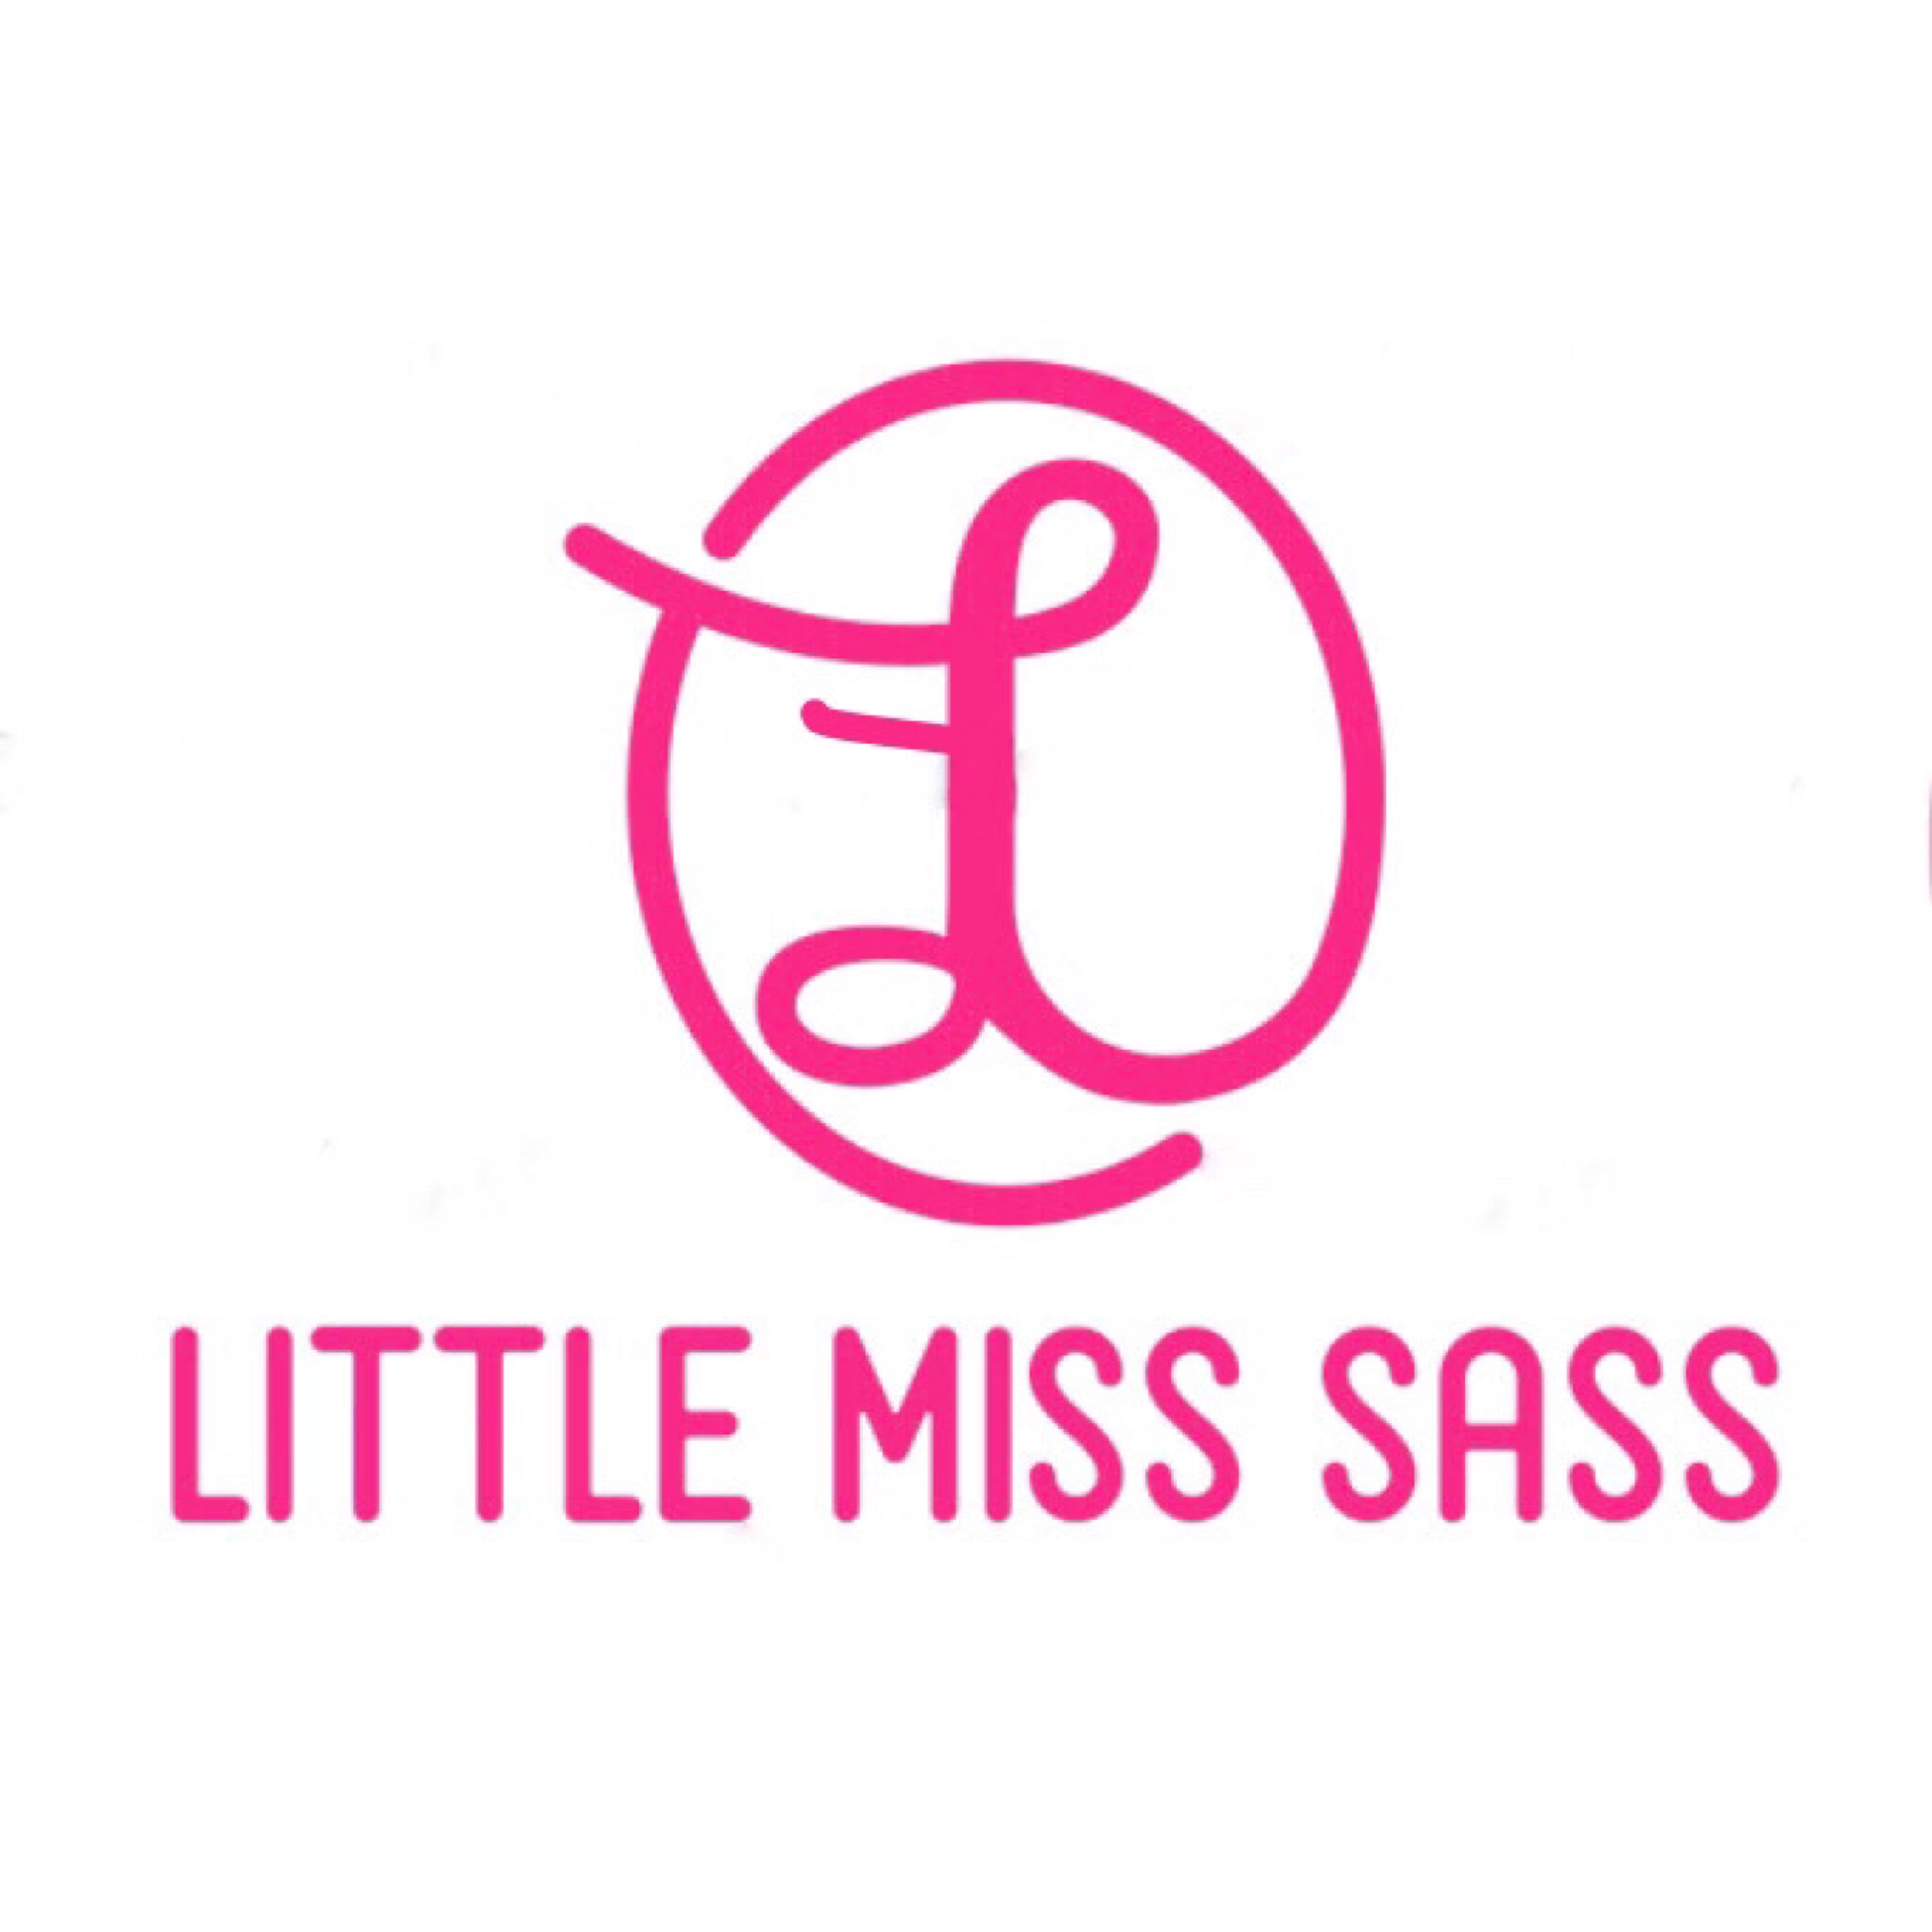 Little Miss Sass